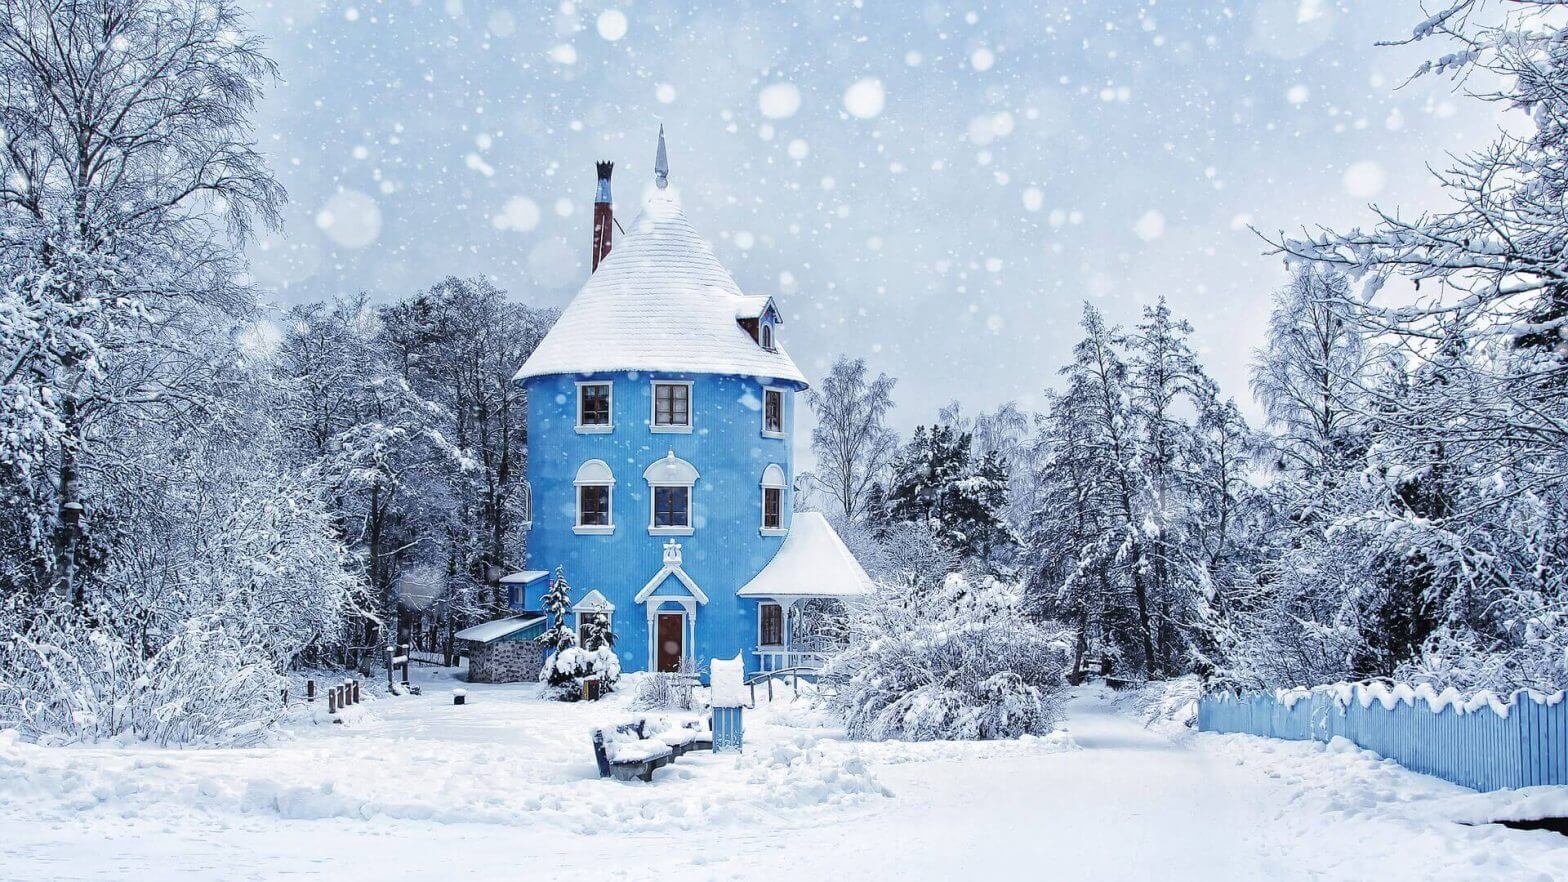 Finland's top 5 outdoor winter activities